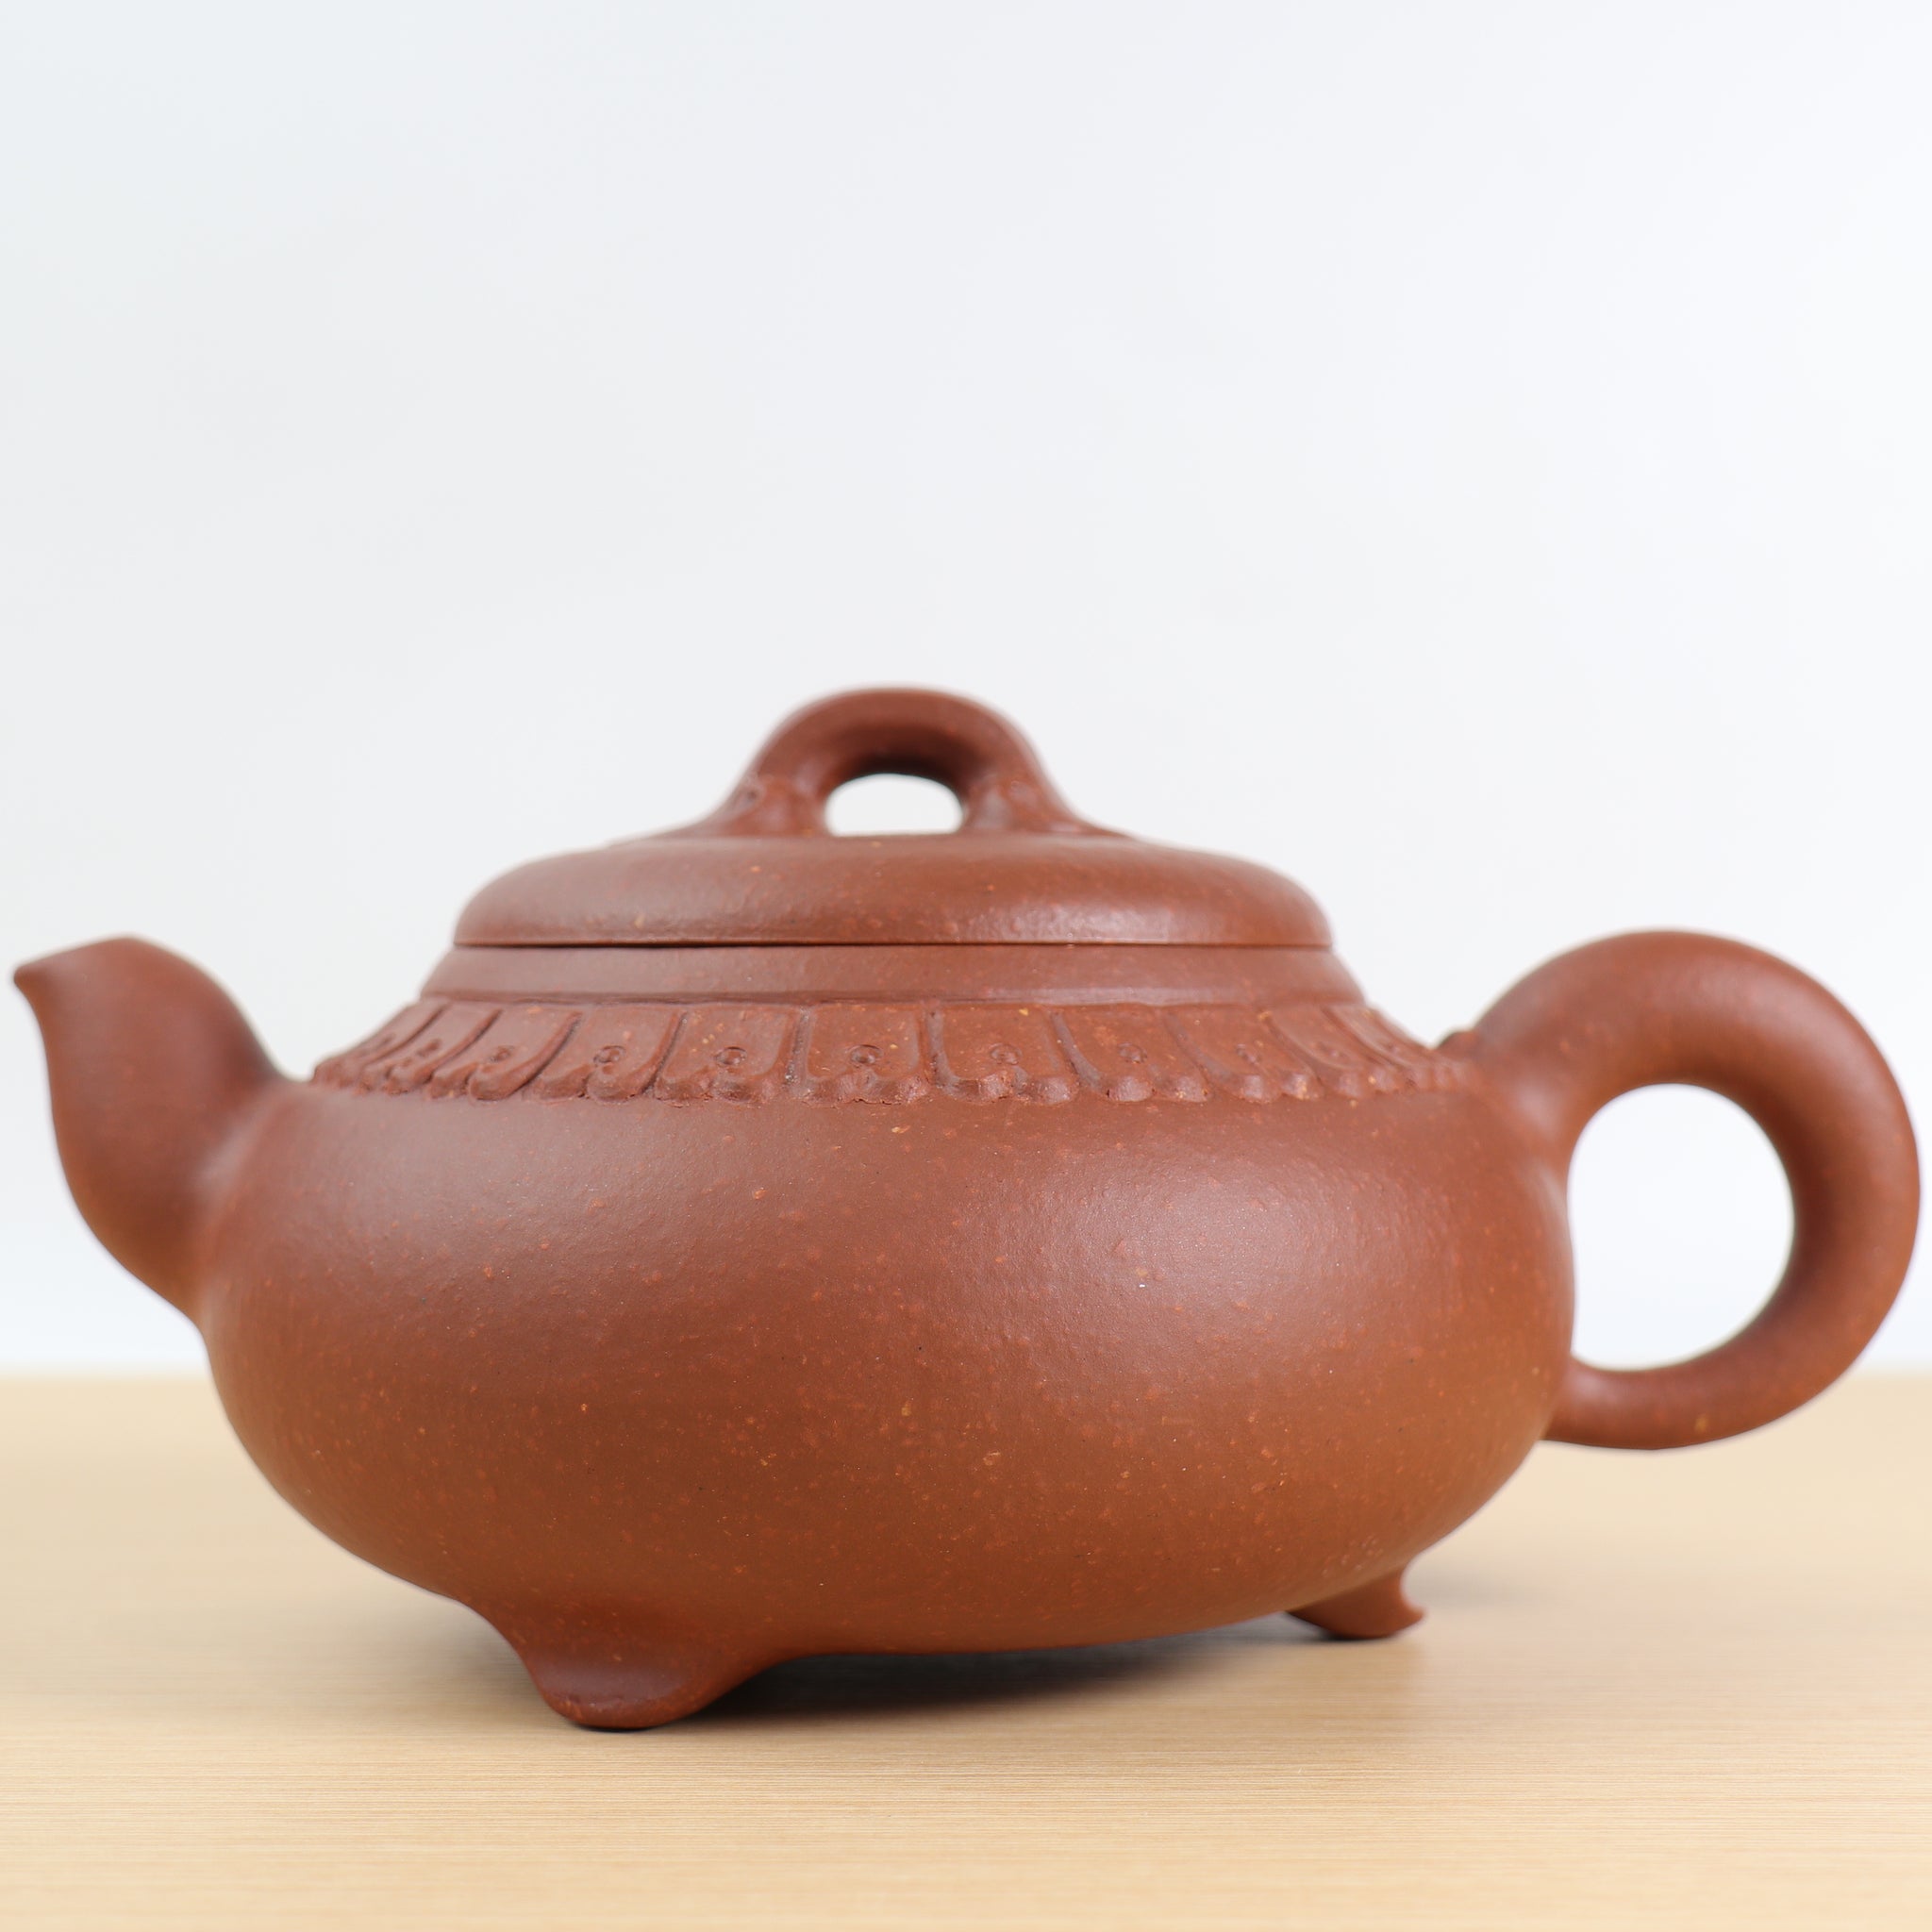 【萬事如意】原礦朱砂芙蓉坡紫砂茶壺